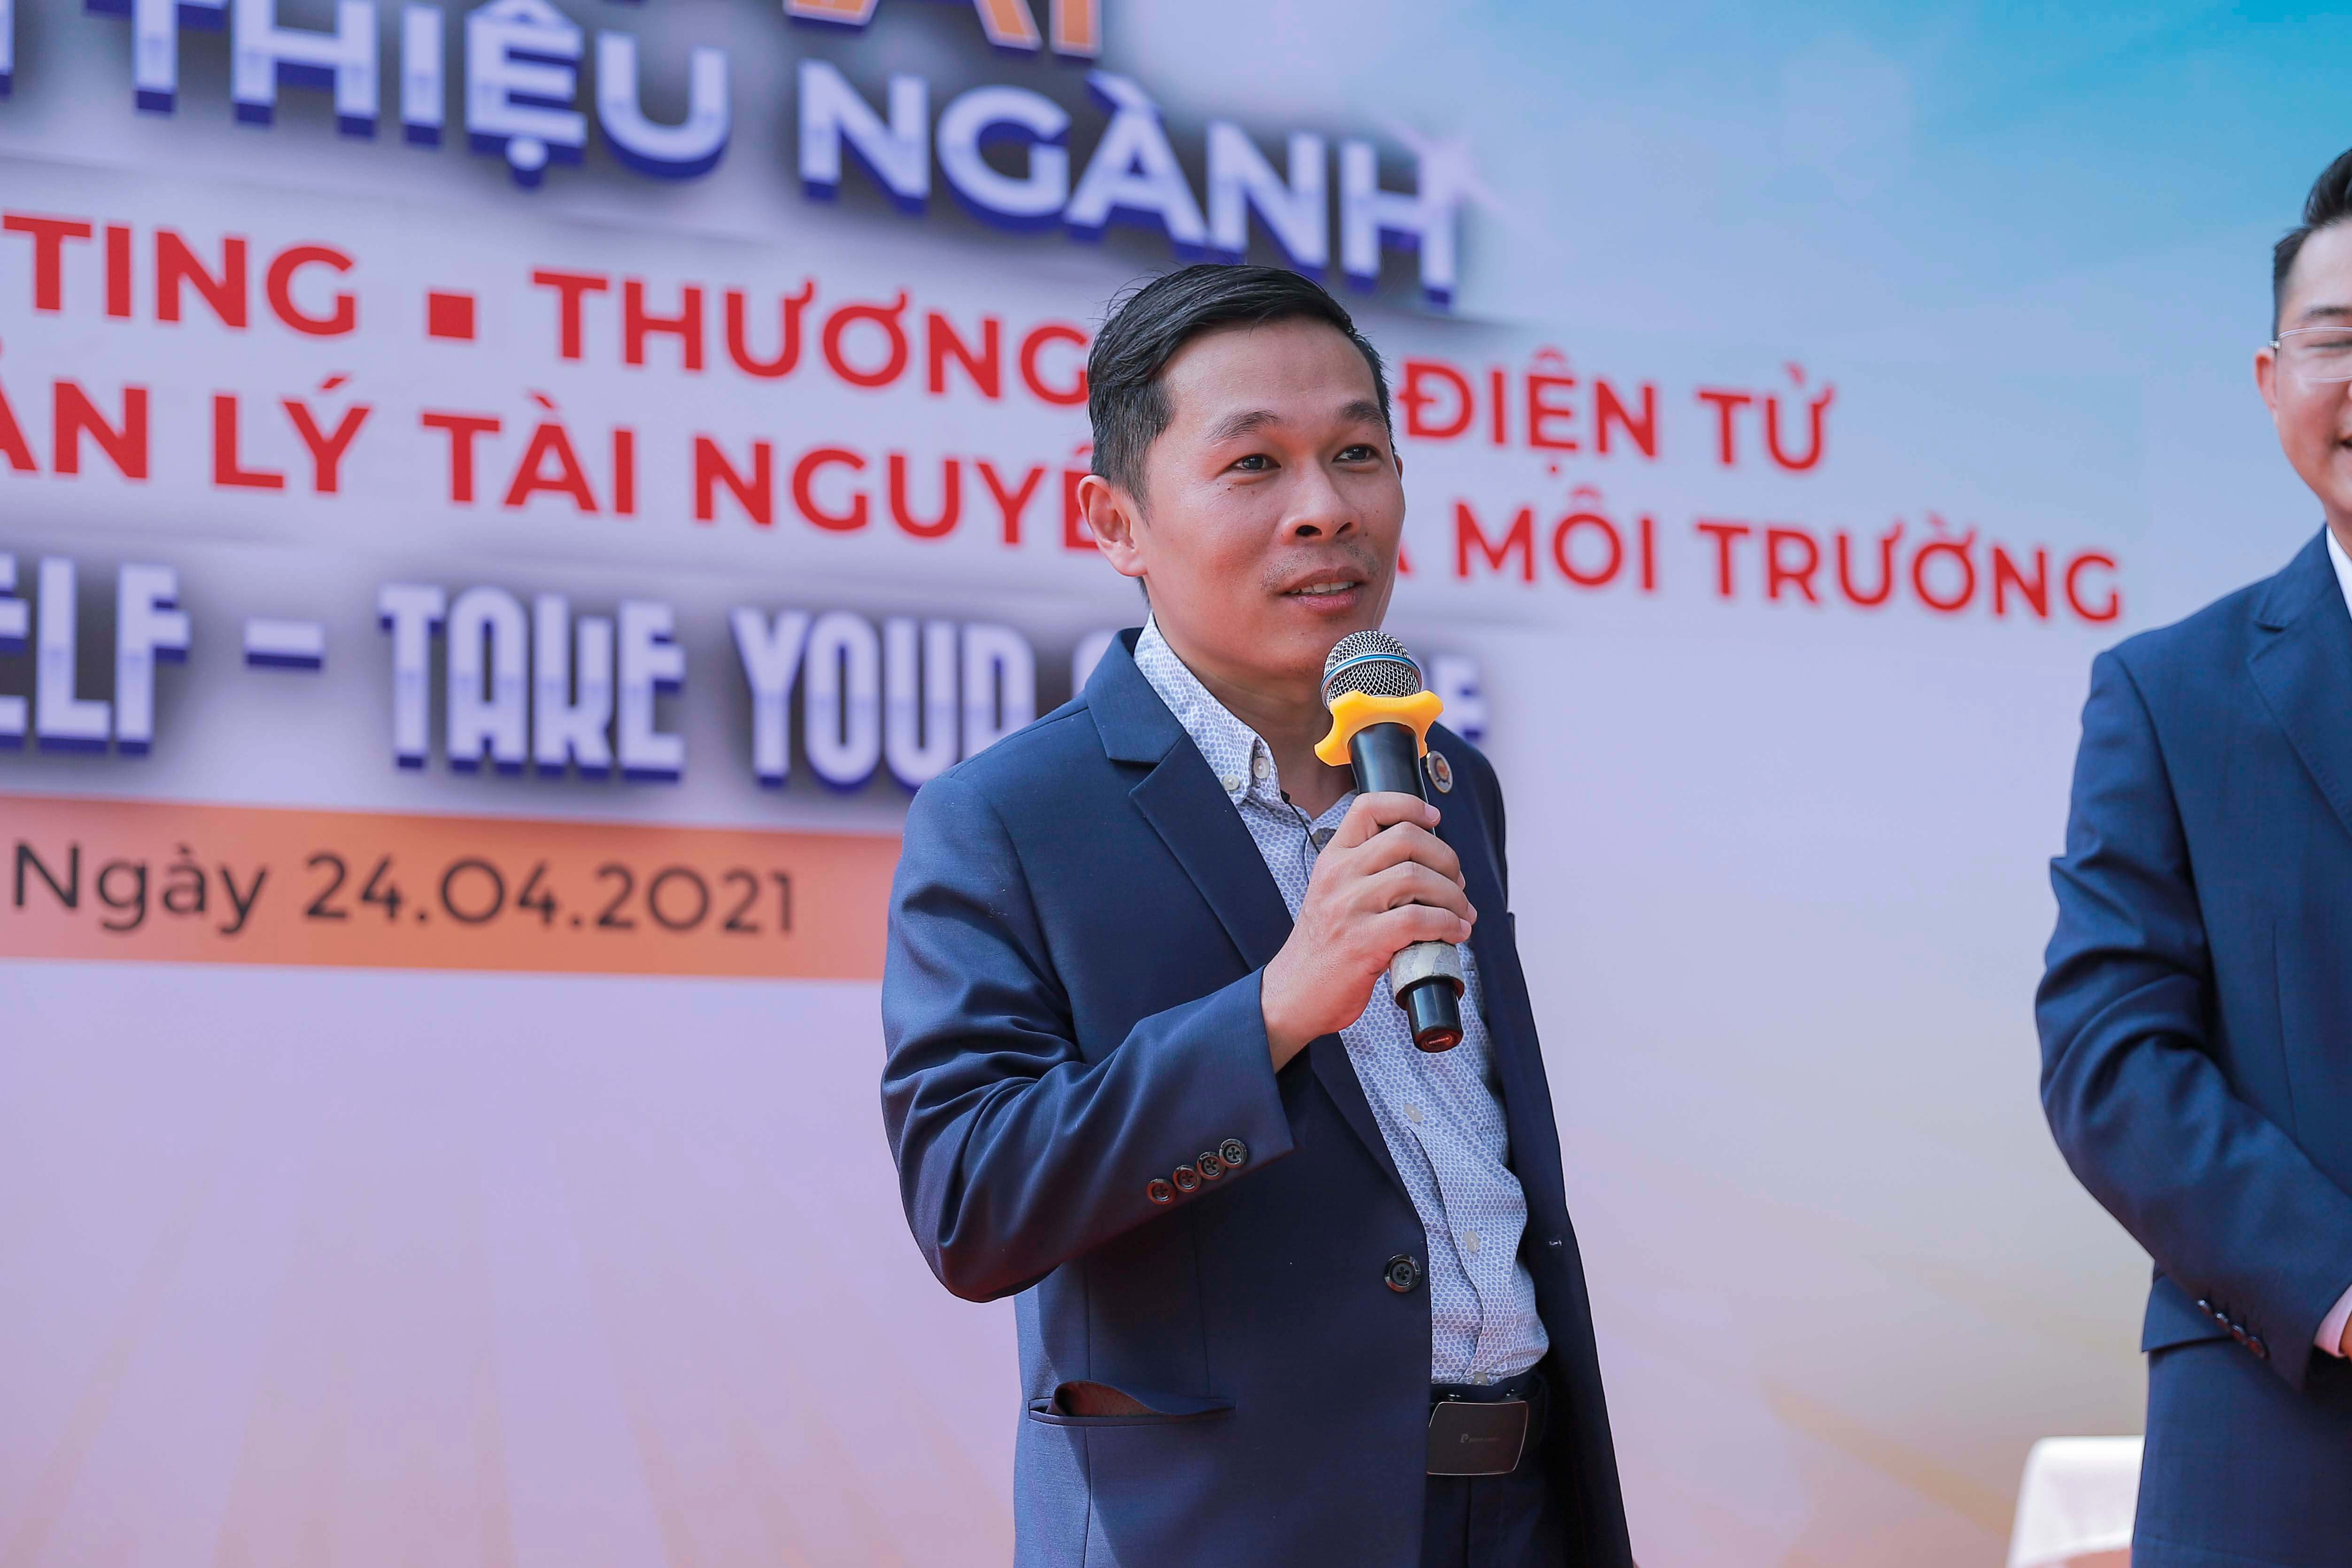 Ông Bùi Ngọc Quang - Giám đốc công ty Cổ phần chuyển phát nhanh Điện hoa - Trang Thương mại điện tử Điện hoa trực tuyến Điện hoa trực tuyến (dienhoatructuyen.vn)